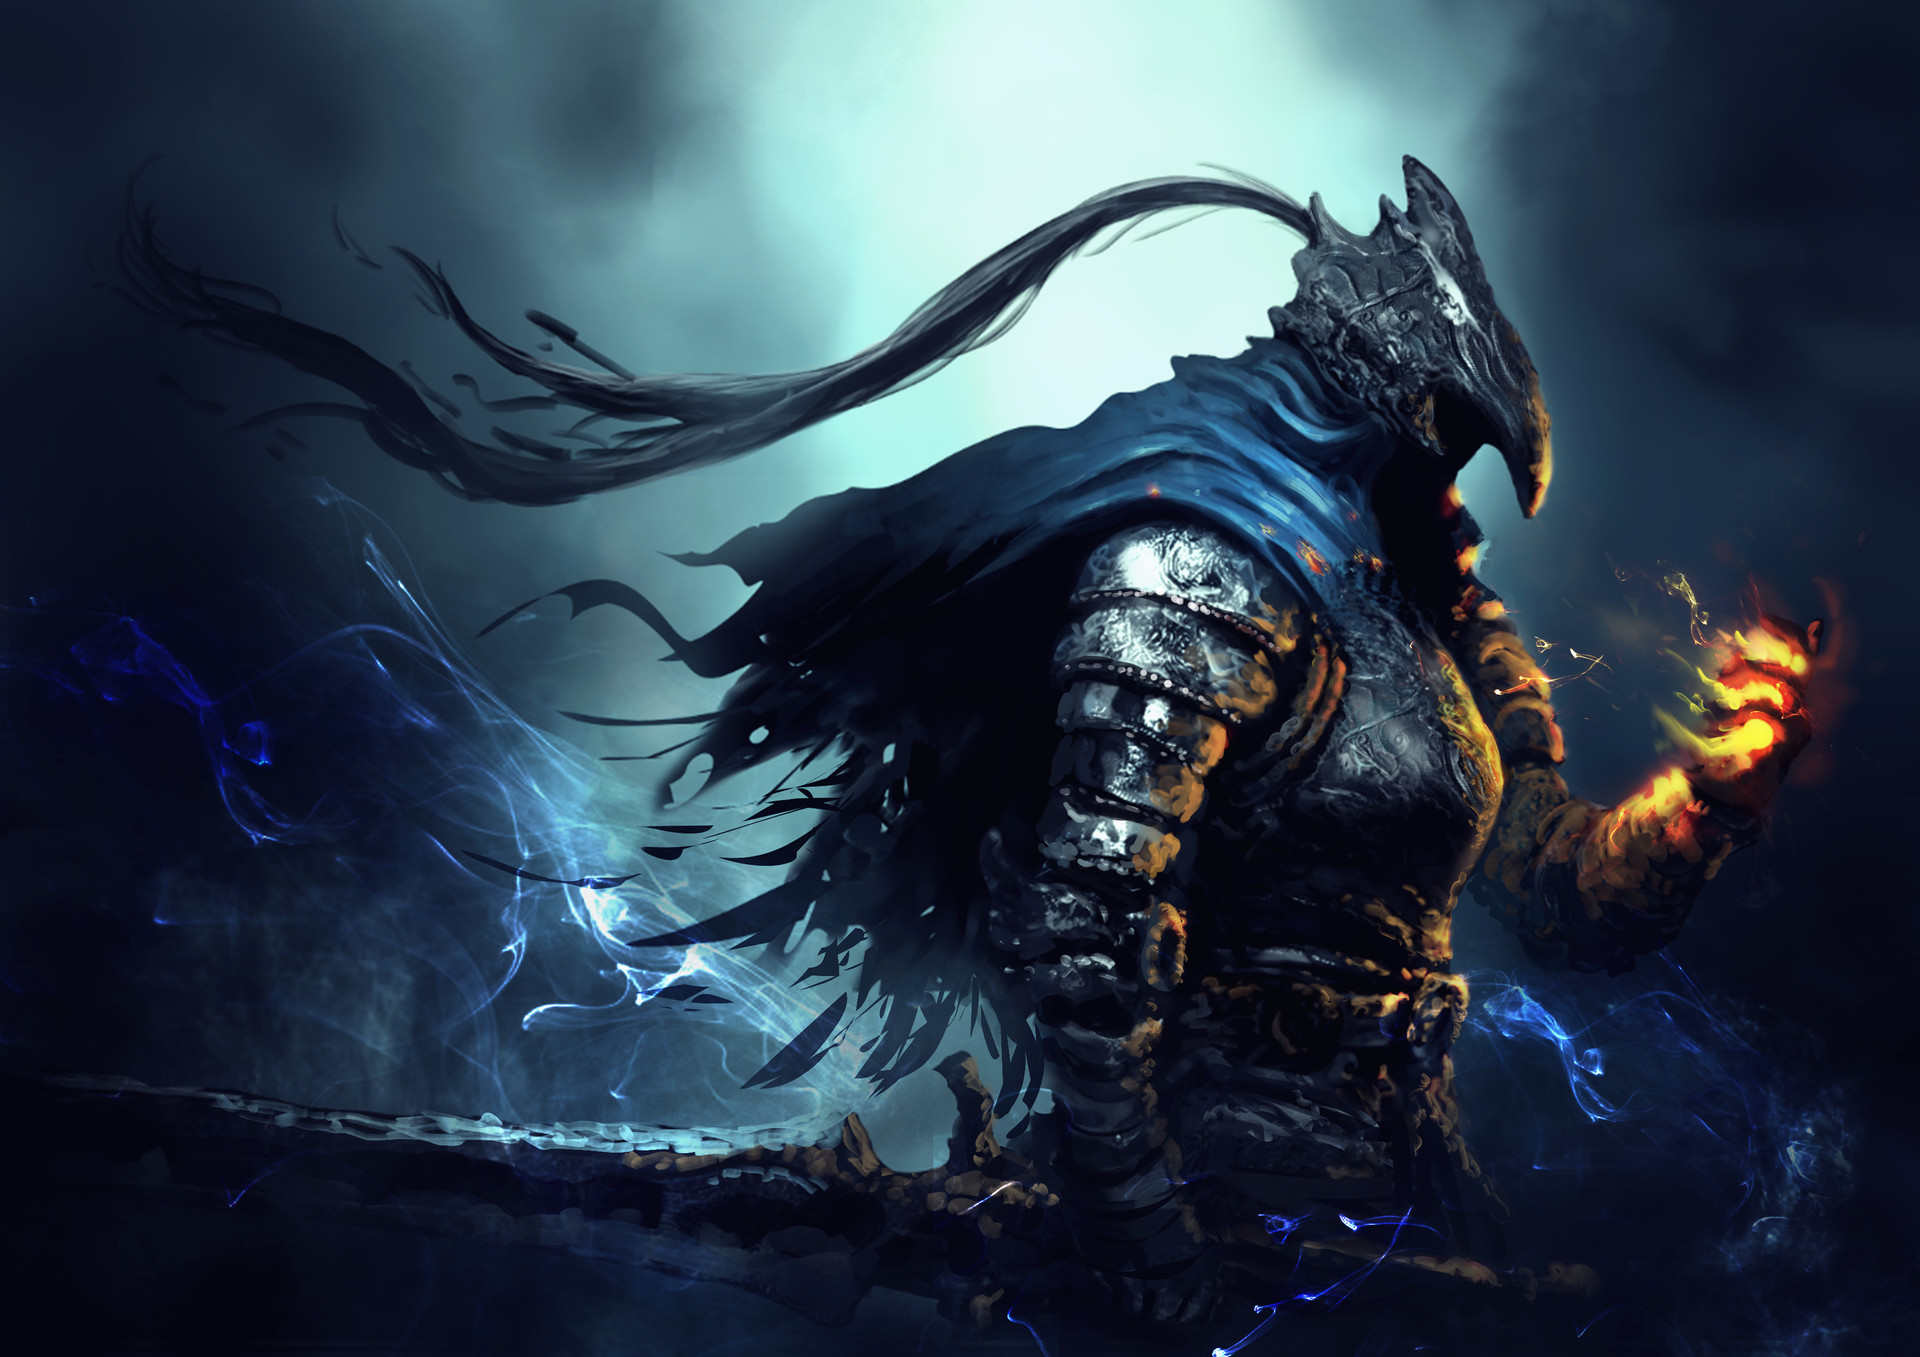 Artorias Artorias The Abysswalker Dark Souls Knight Fantasy Art Video Game Art 1920x1357